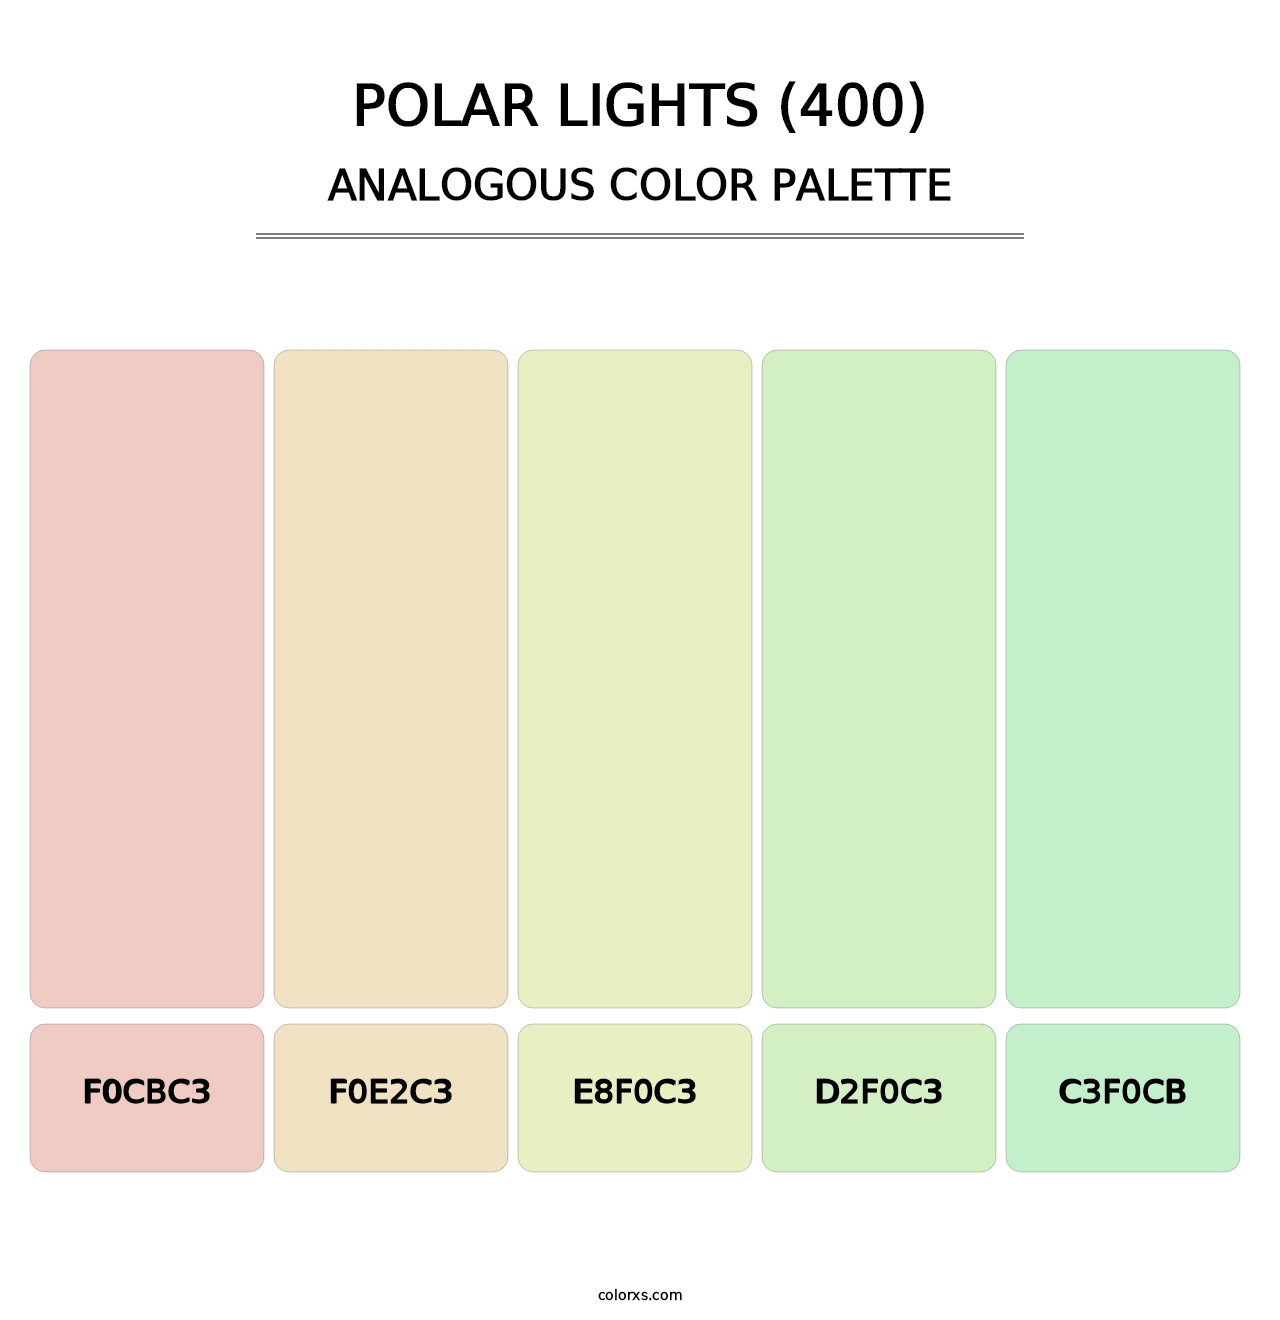 Polar Lights (400) - Analogous Color Palette